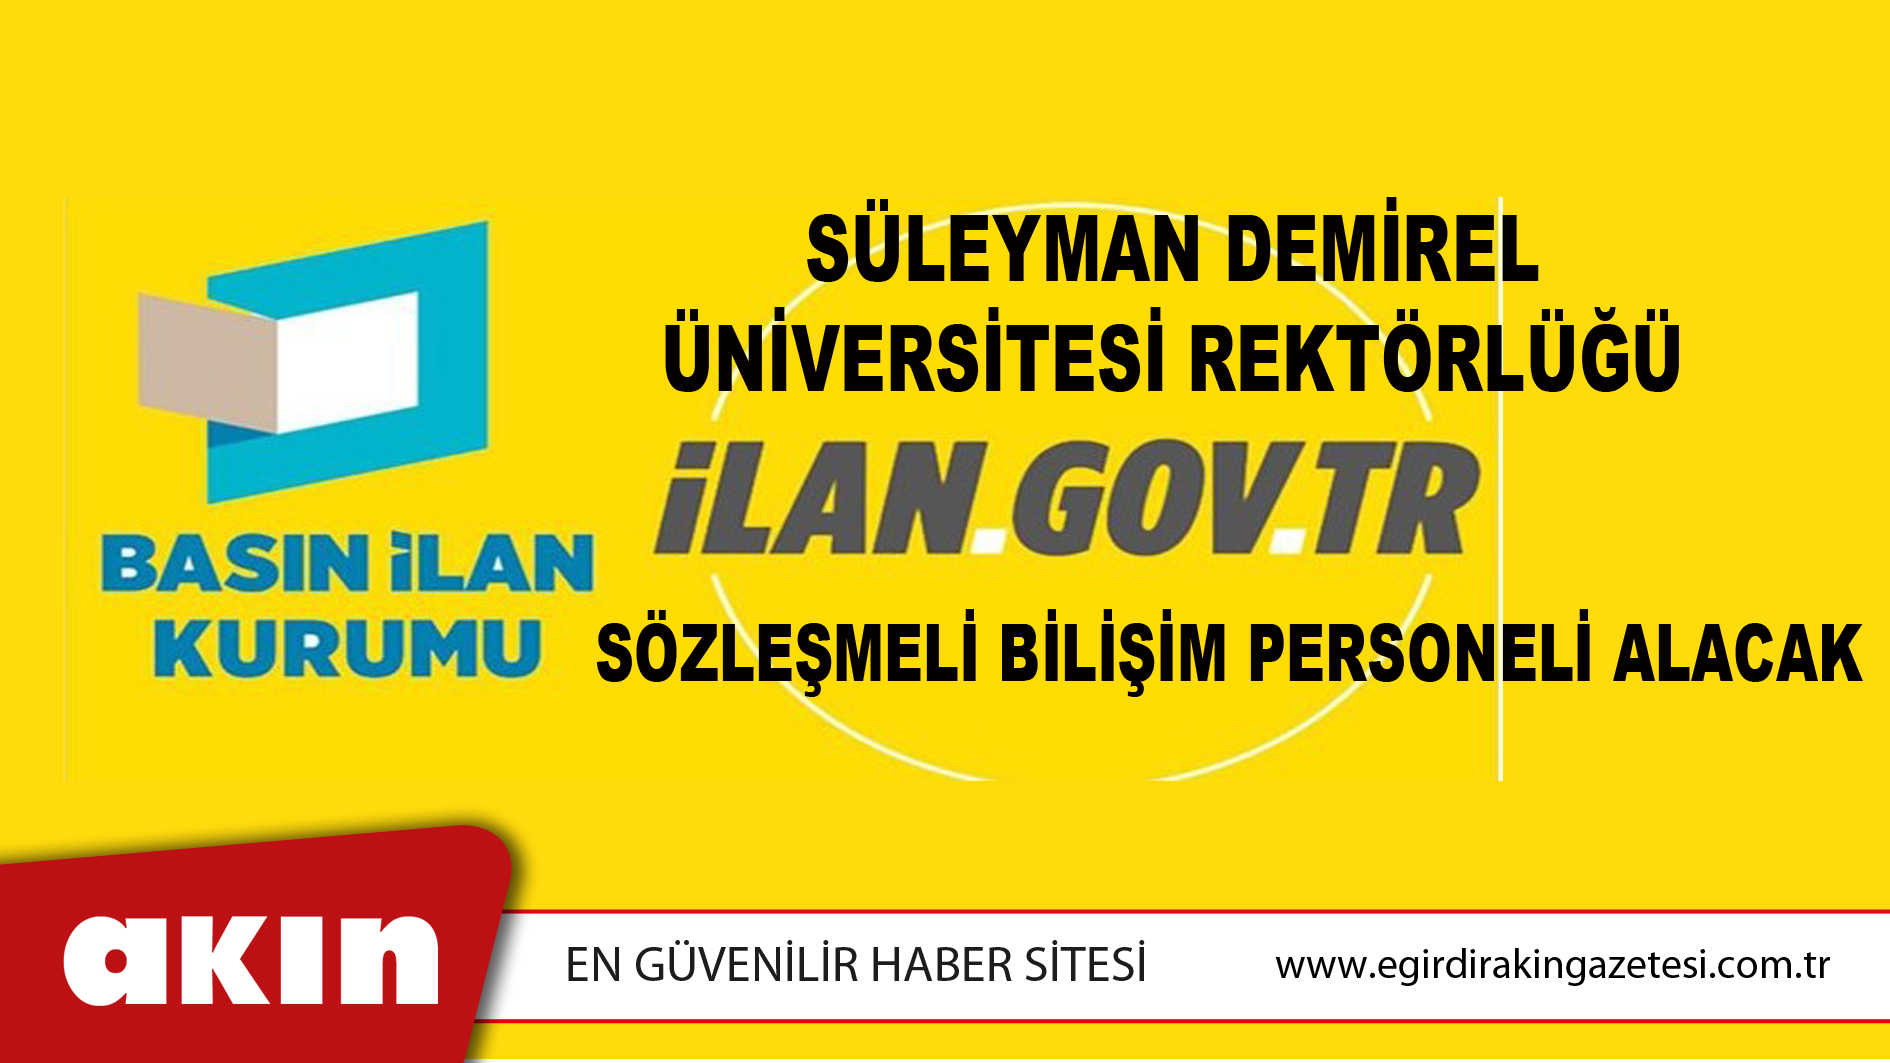 Süleyman Demirel Üniversitesi Rektörlüğü Sözleşmeli Bilişim Personeli Alacak